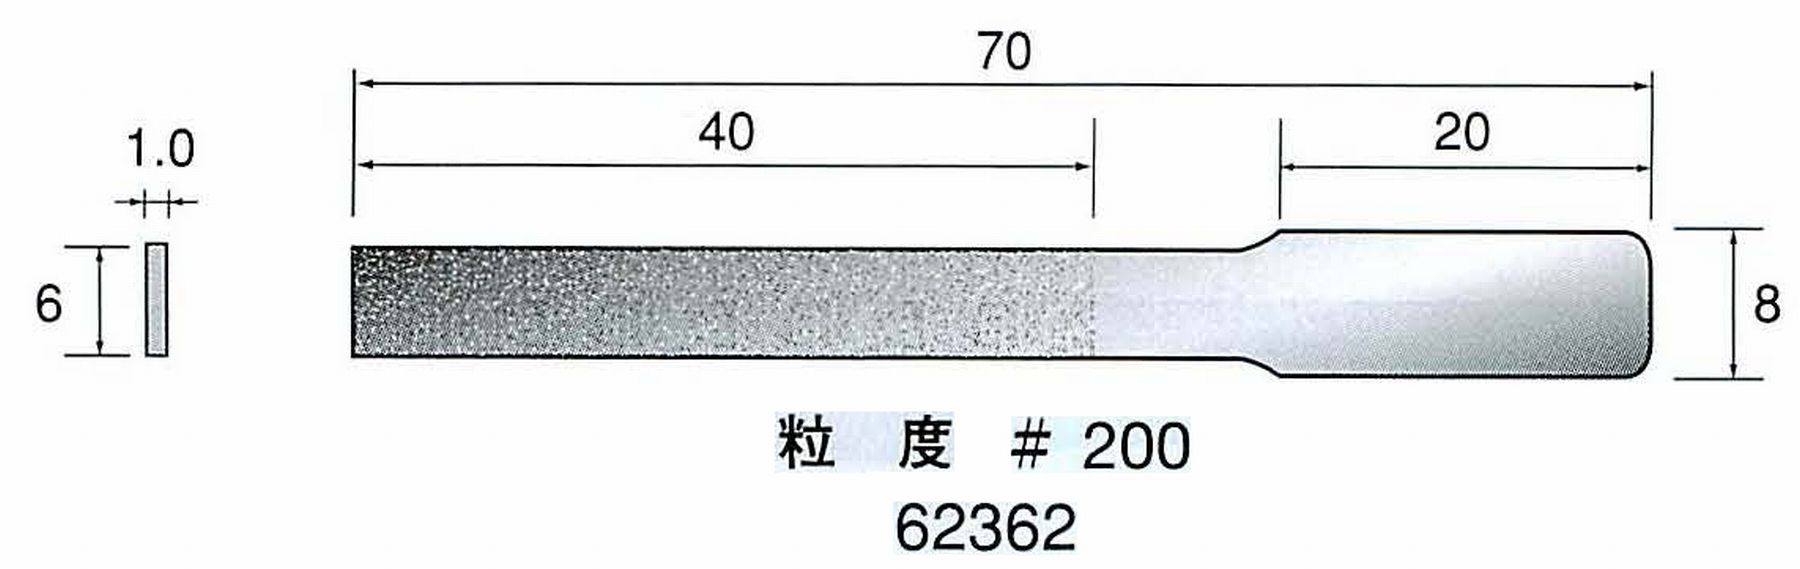 ナカニシ/NAKANISHI ハンディタイプ 電動・エアーヤスリ(往復動) ラスター専用工具 ダイヤモンドヤスリフラットタイプ 62362